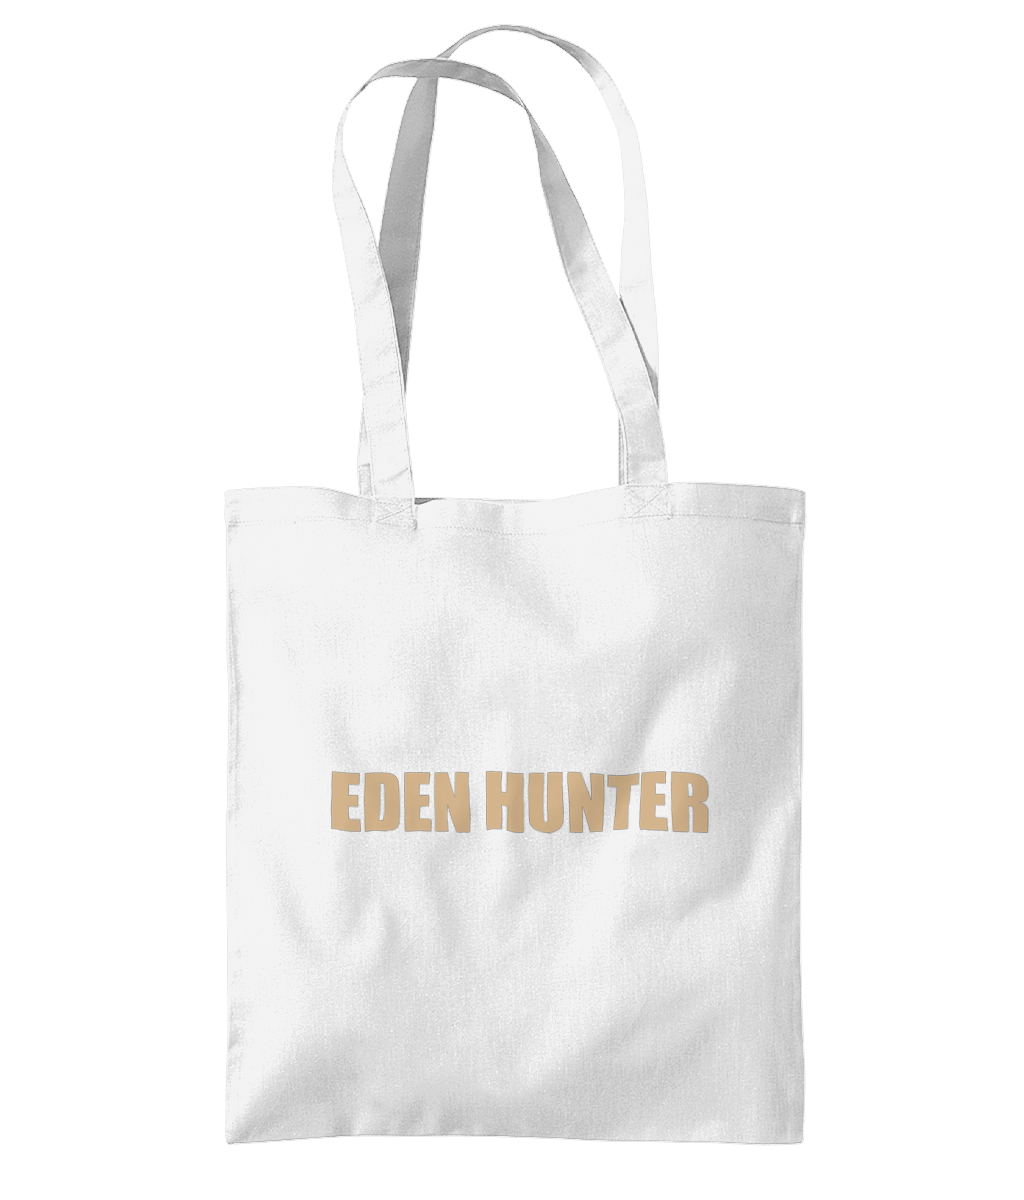 Eden Hunter Tote Bag